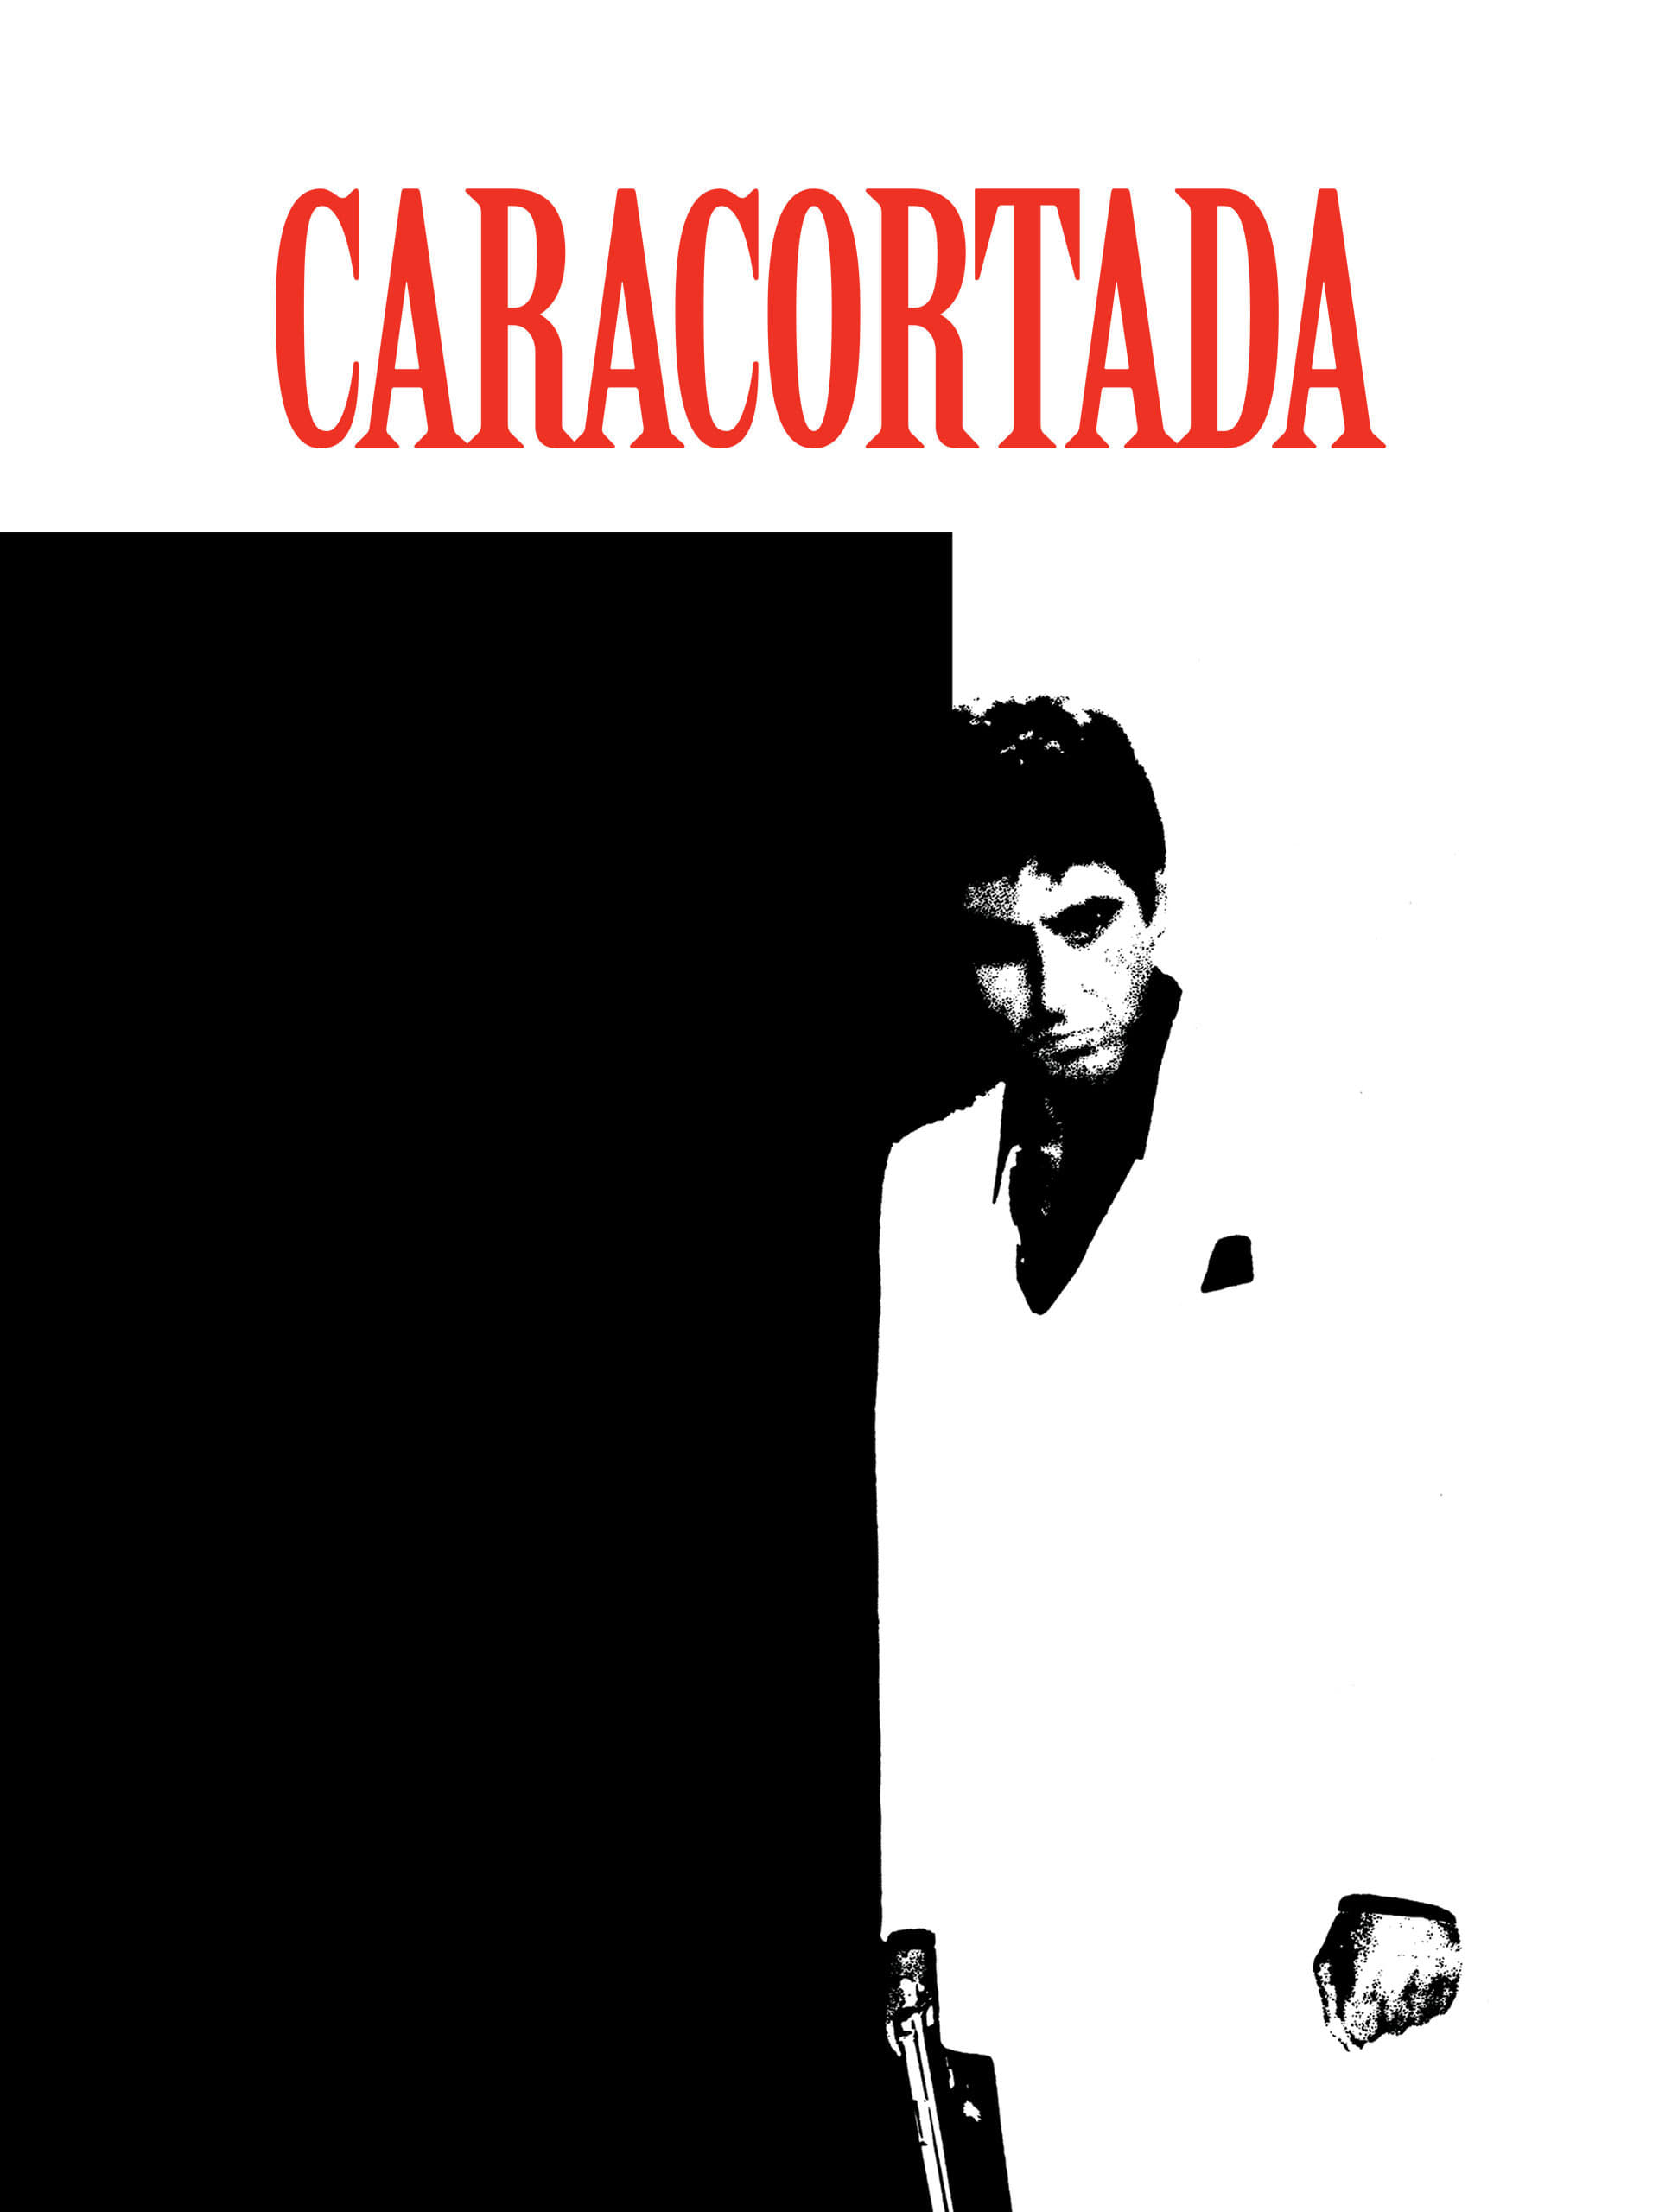 Caracortada - 1983